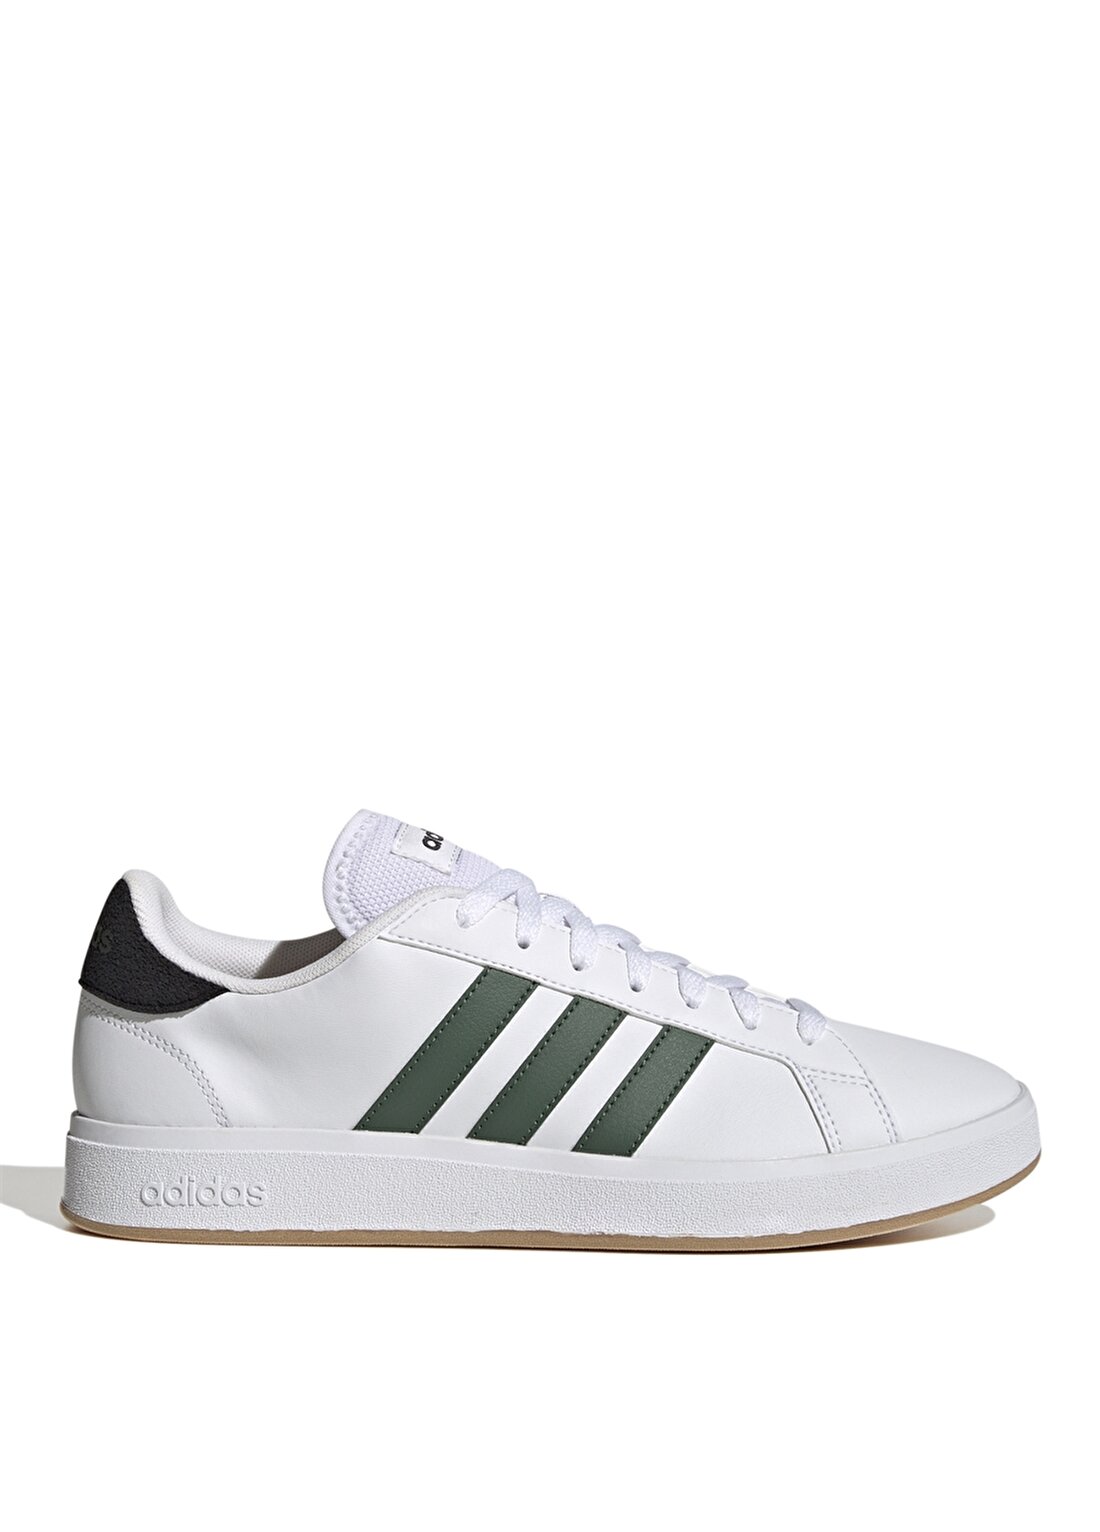 Adidas Beyaz - Yeşil Erkek Lifestyle Ayakkabı GY9863 GRAND COURT TD